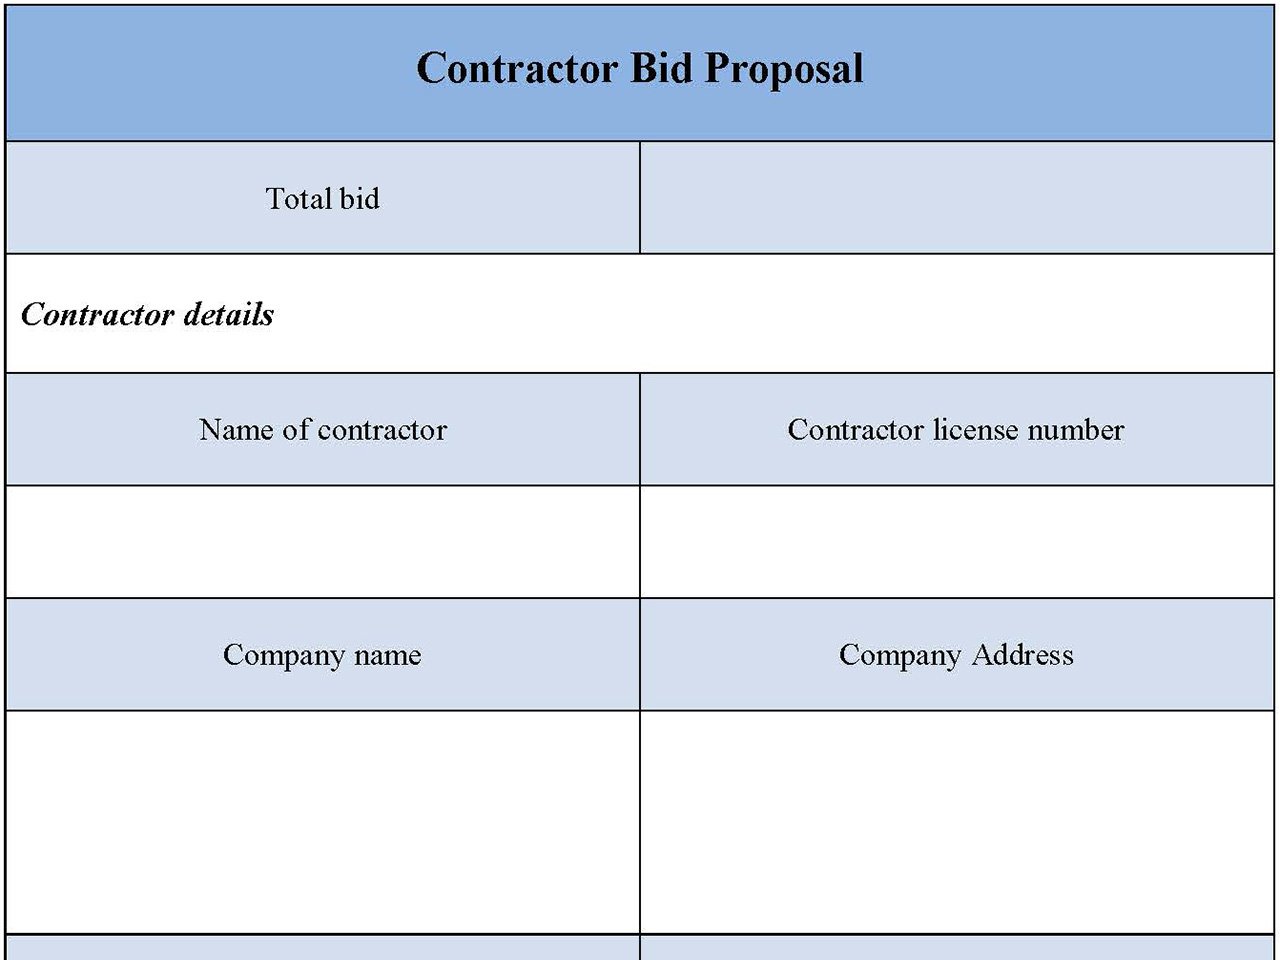 Contractor Bid Proposal Form